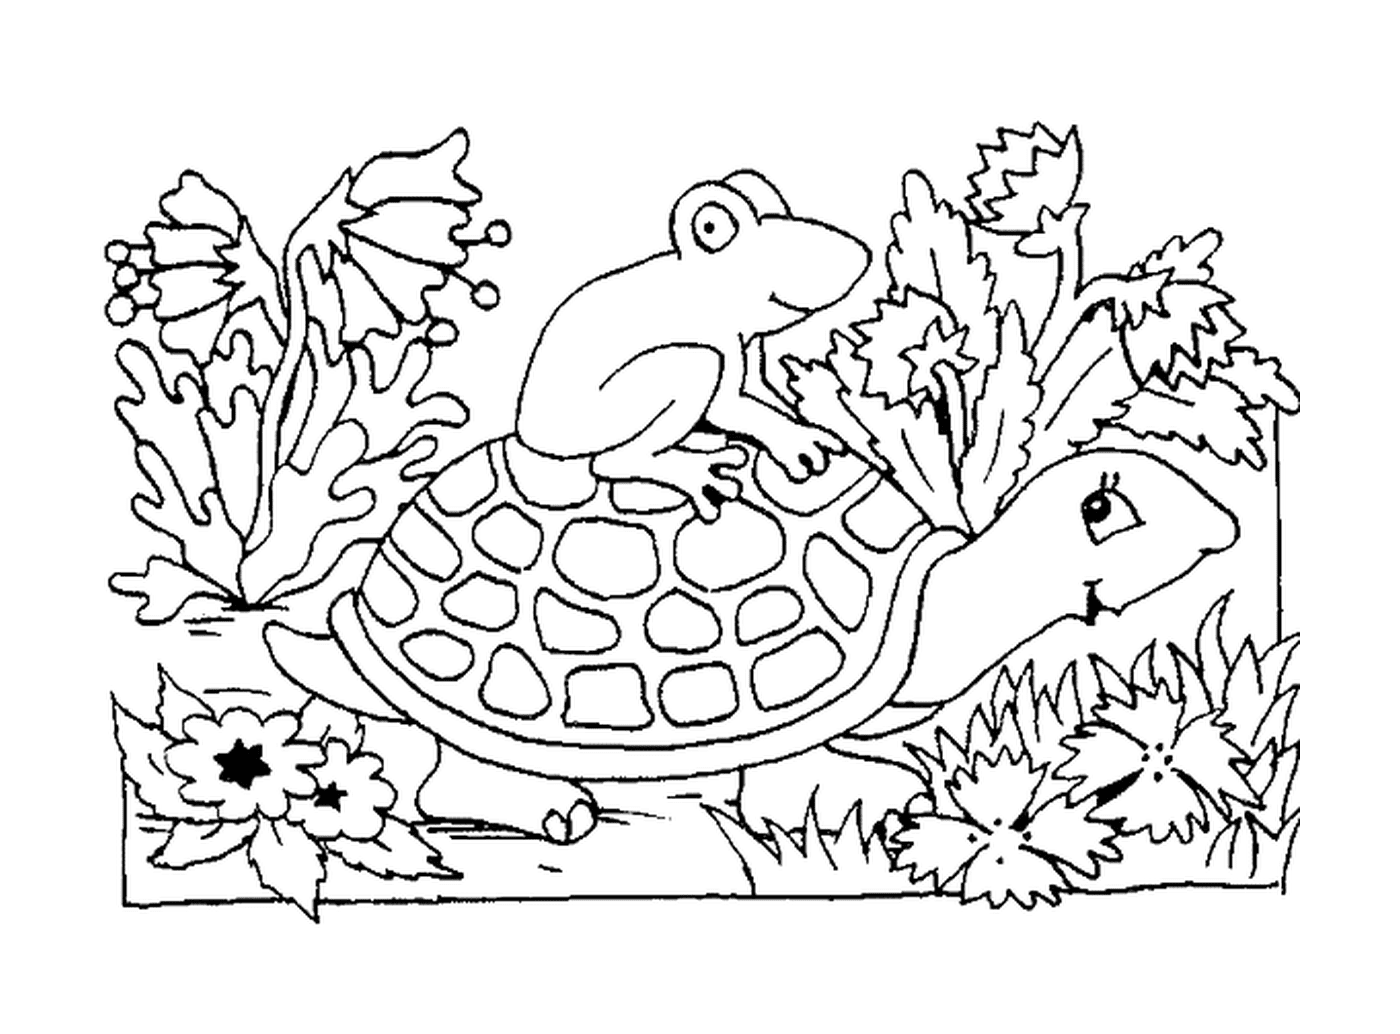  Ein Frosch sitzt auf einer Schildkrötenschale 